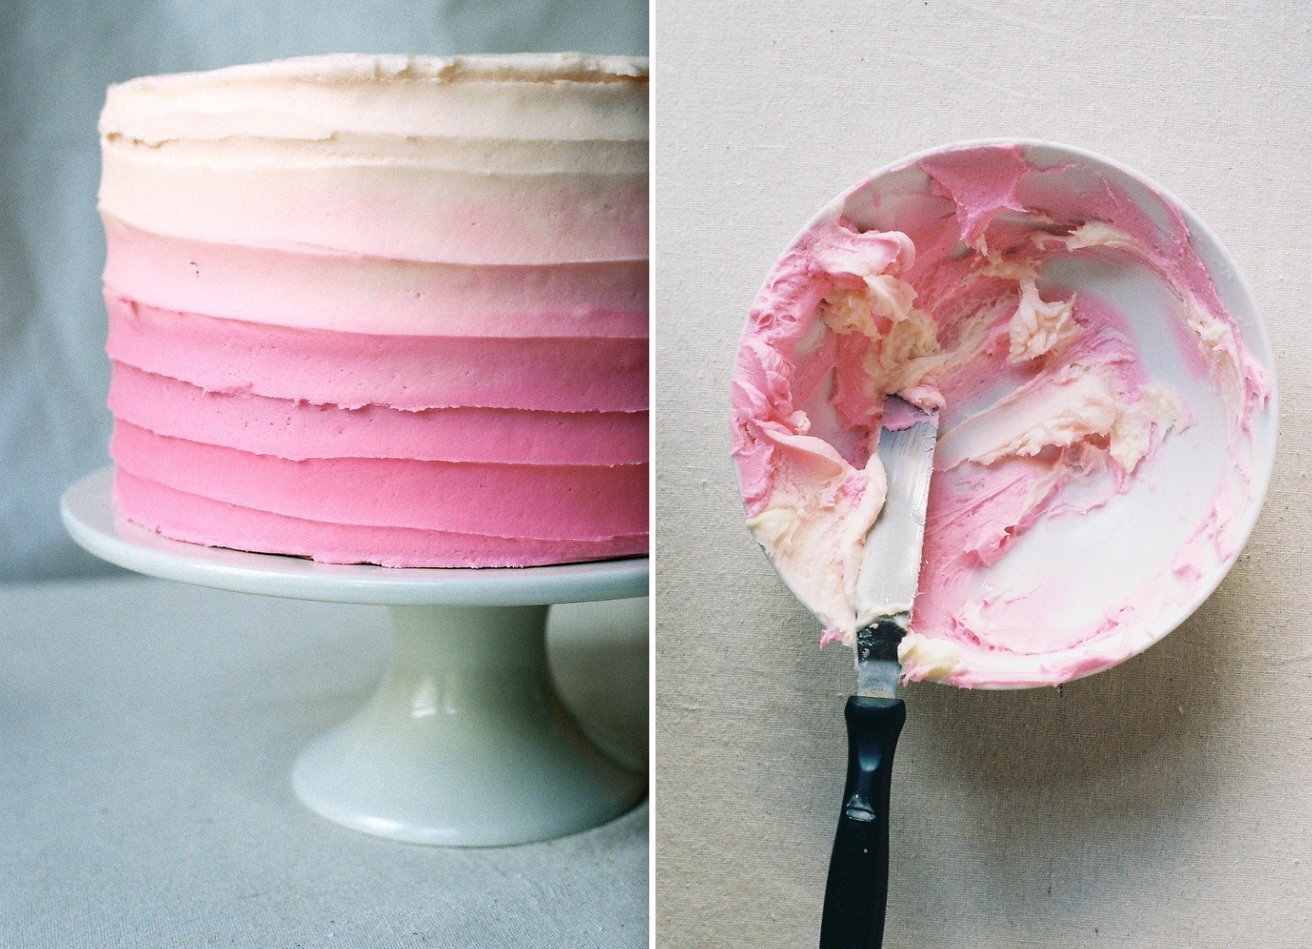 Выравнивание и украшение торта кремом чиз. Торт розовый крем чиз. Крем чиз омбре. Торт с розовыми разводами. Торт с мазками из крема.